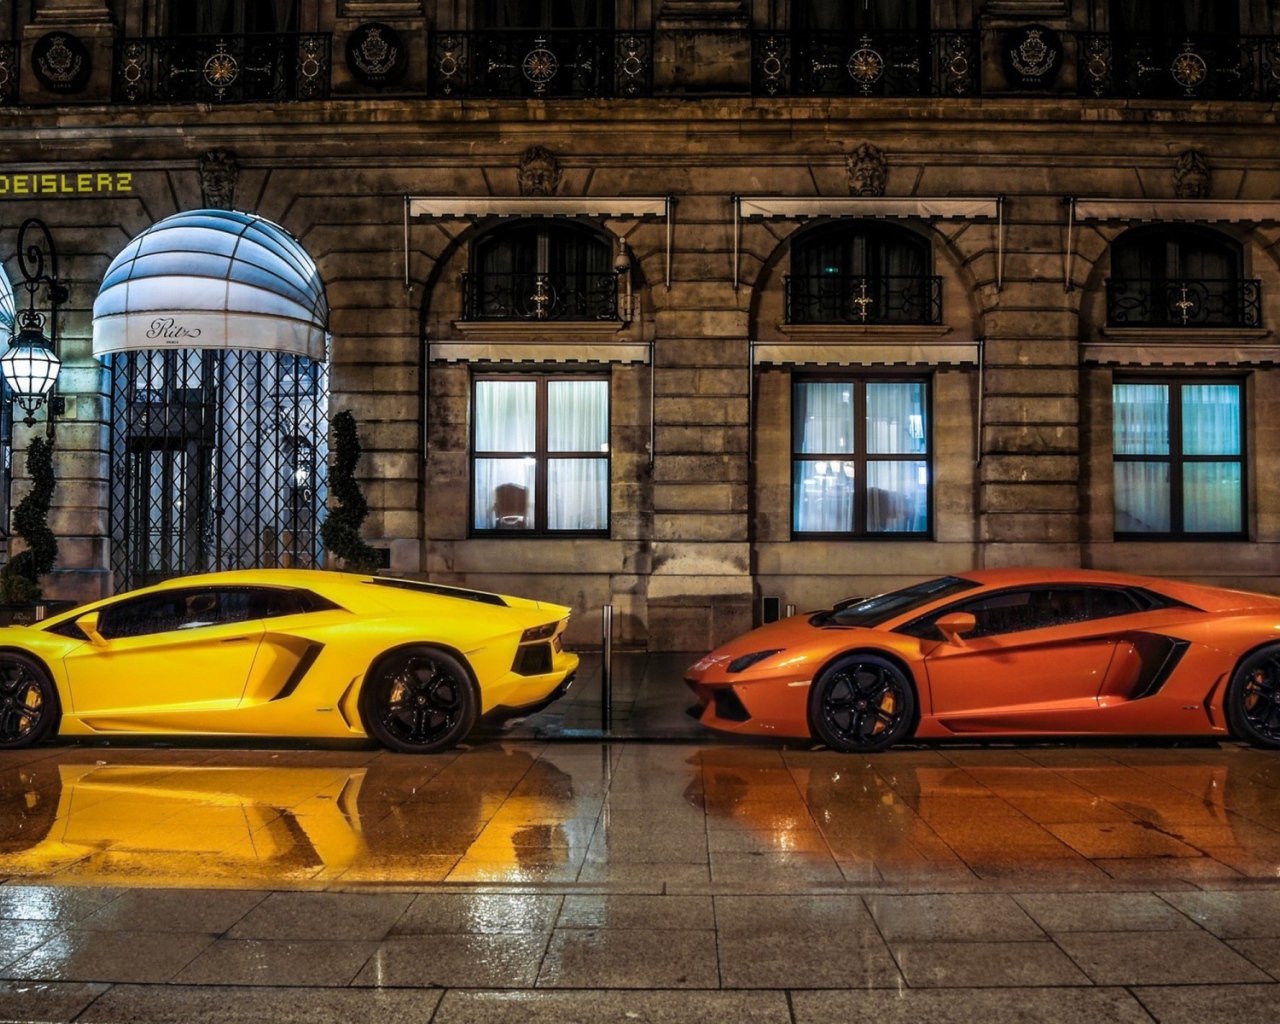 Желтый и оранжевый автомобили Lamborghini Aventador LP700-4